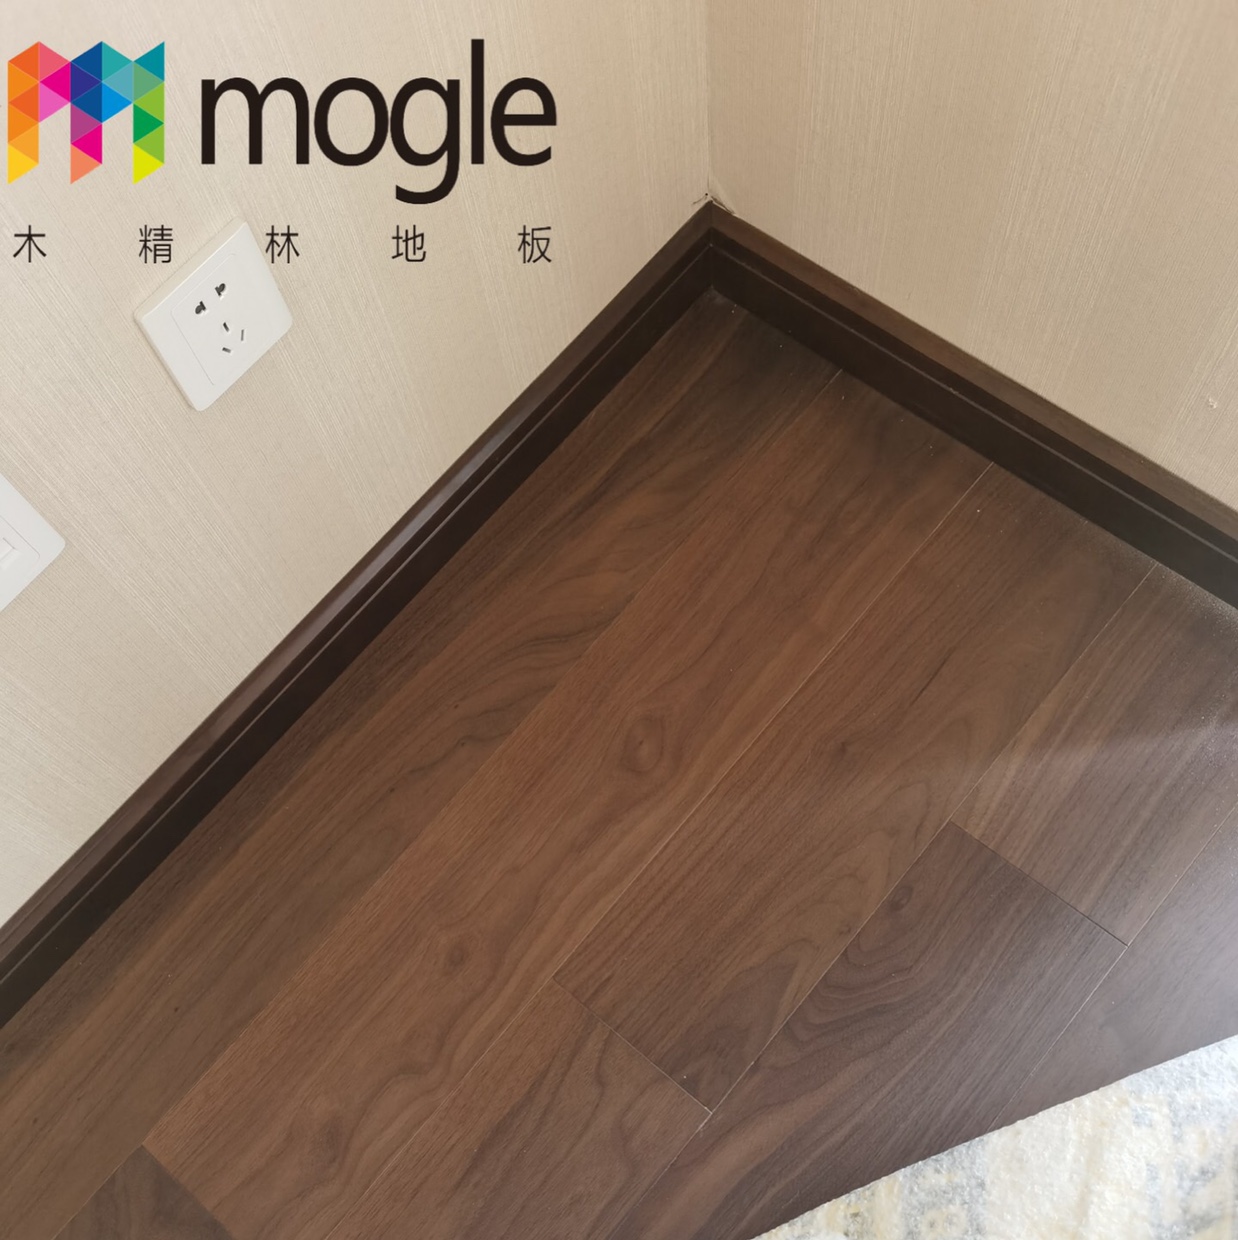 黑胡桃mjl 028北欧美式风格大自然原木色客厅卧室家用原木实木地板强化复合木地板